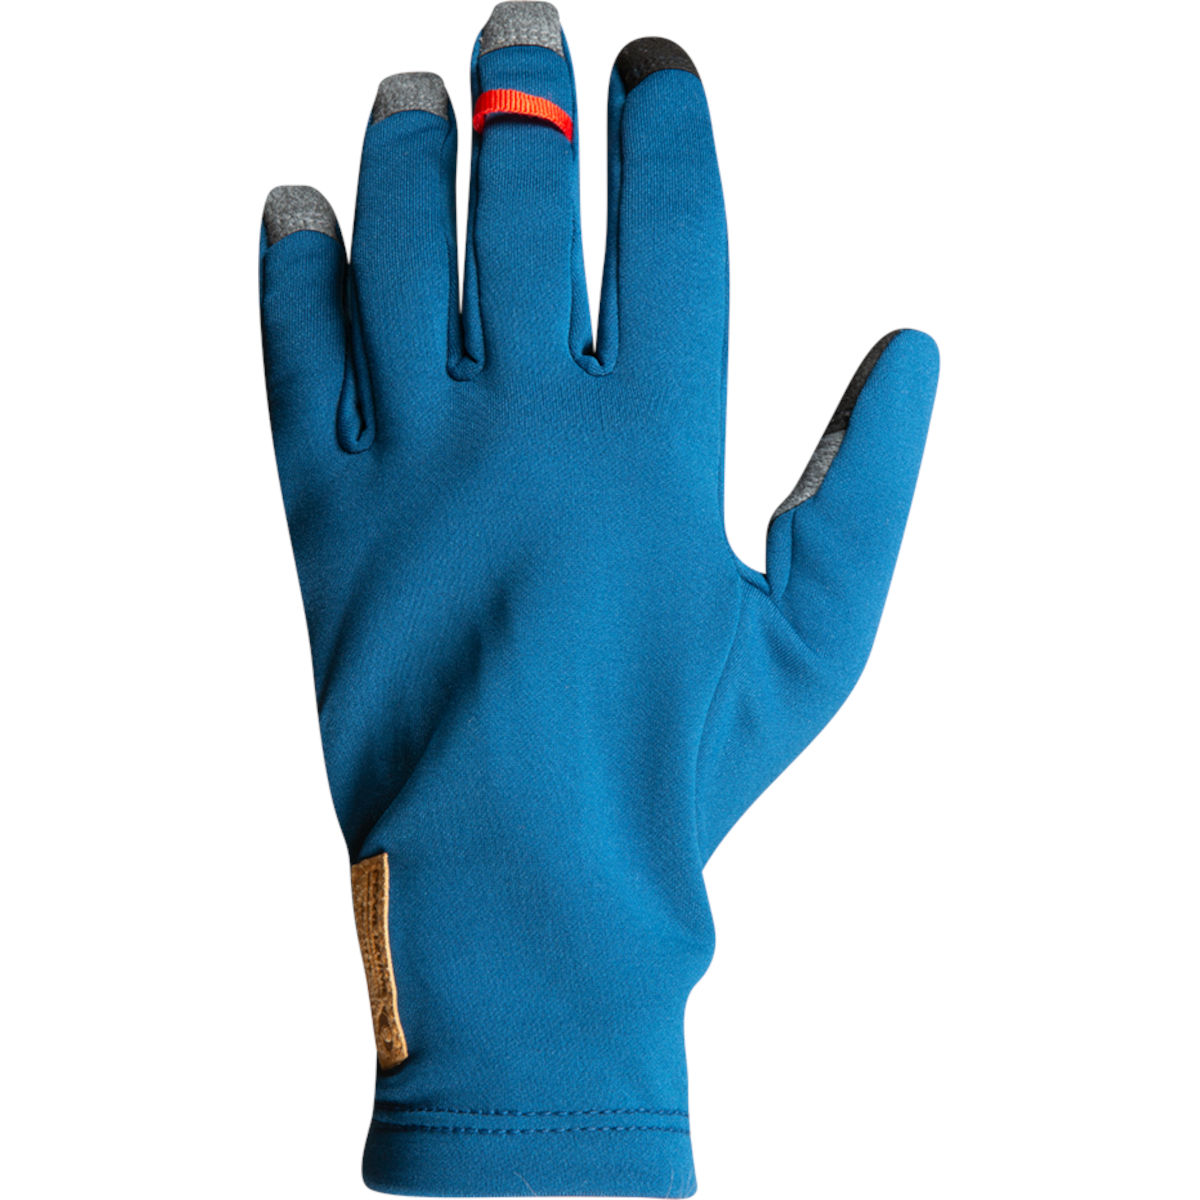 Produktbild von PEARL iZUMi Thermal Handschuhe 14142008 - twilight - 194